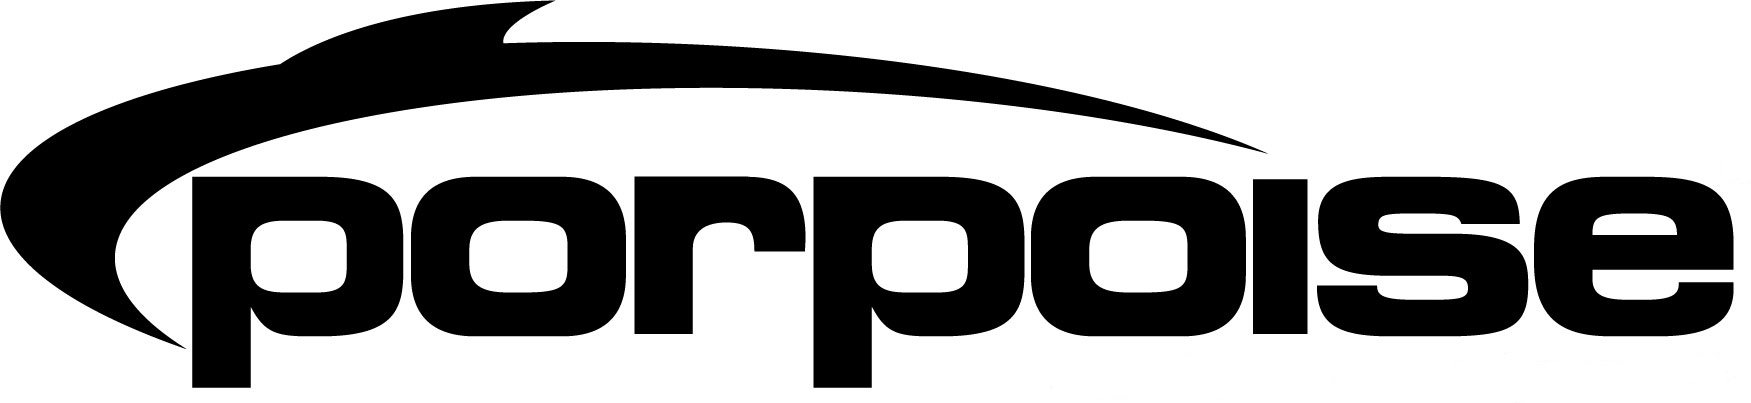 Trademark Logo PORPOISE